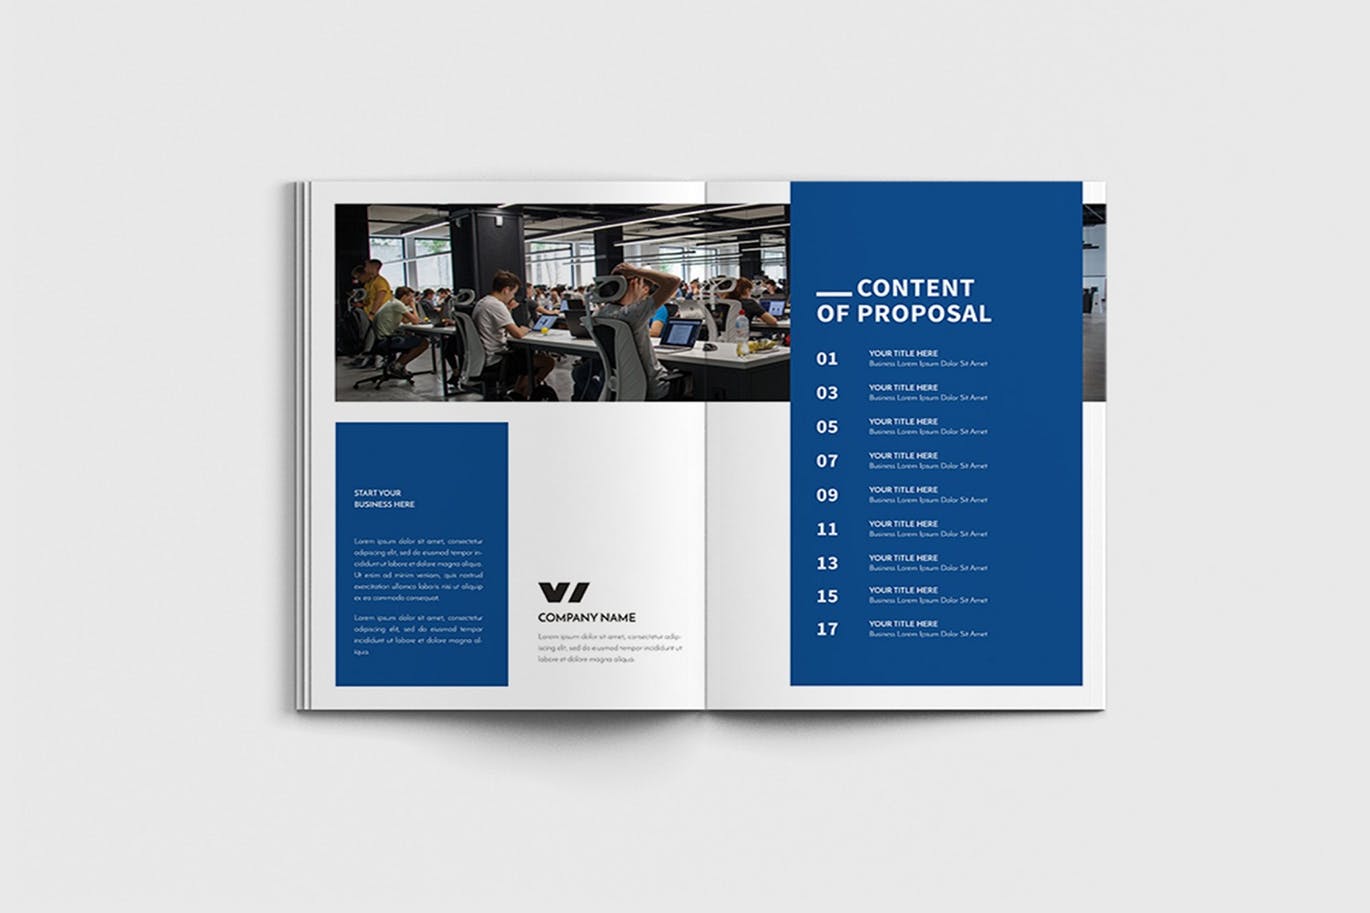 商业计划书/企业简介宣传画册设计模板 Walkers – A4 Business Brochure Template插图(2)